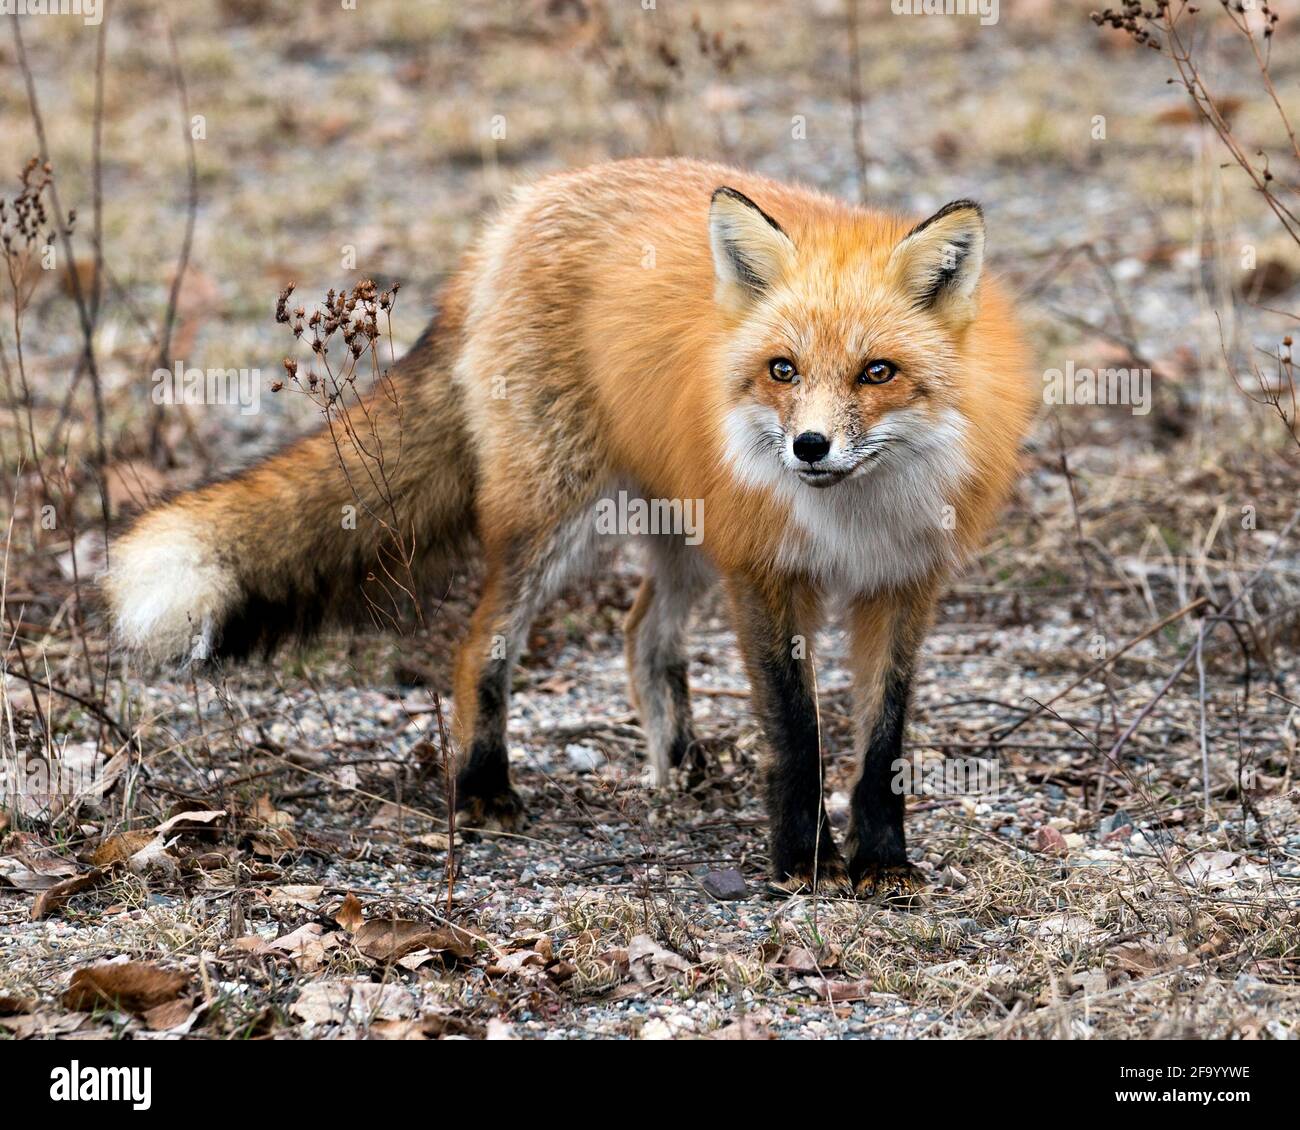 Red Fox primo piano guardando la fotocamera nella stagione primaverile con sfocatura sfondo primavera fogliame nel suo ambiente e habitat. Immagine FOX. Immagine. Foto Stock